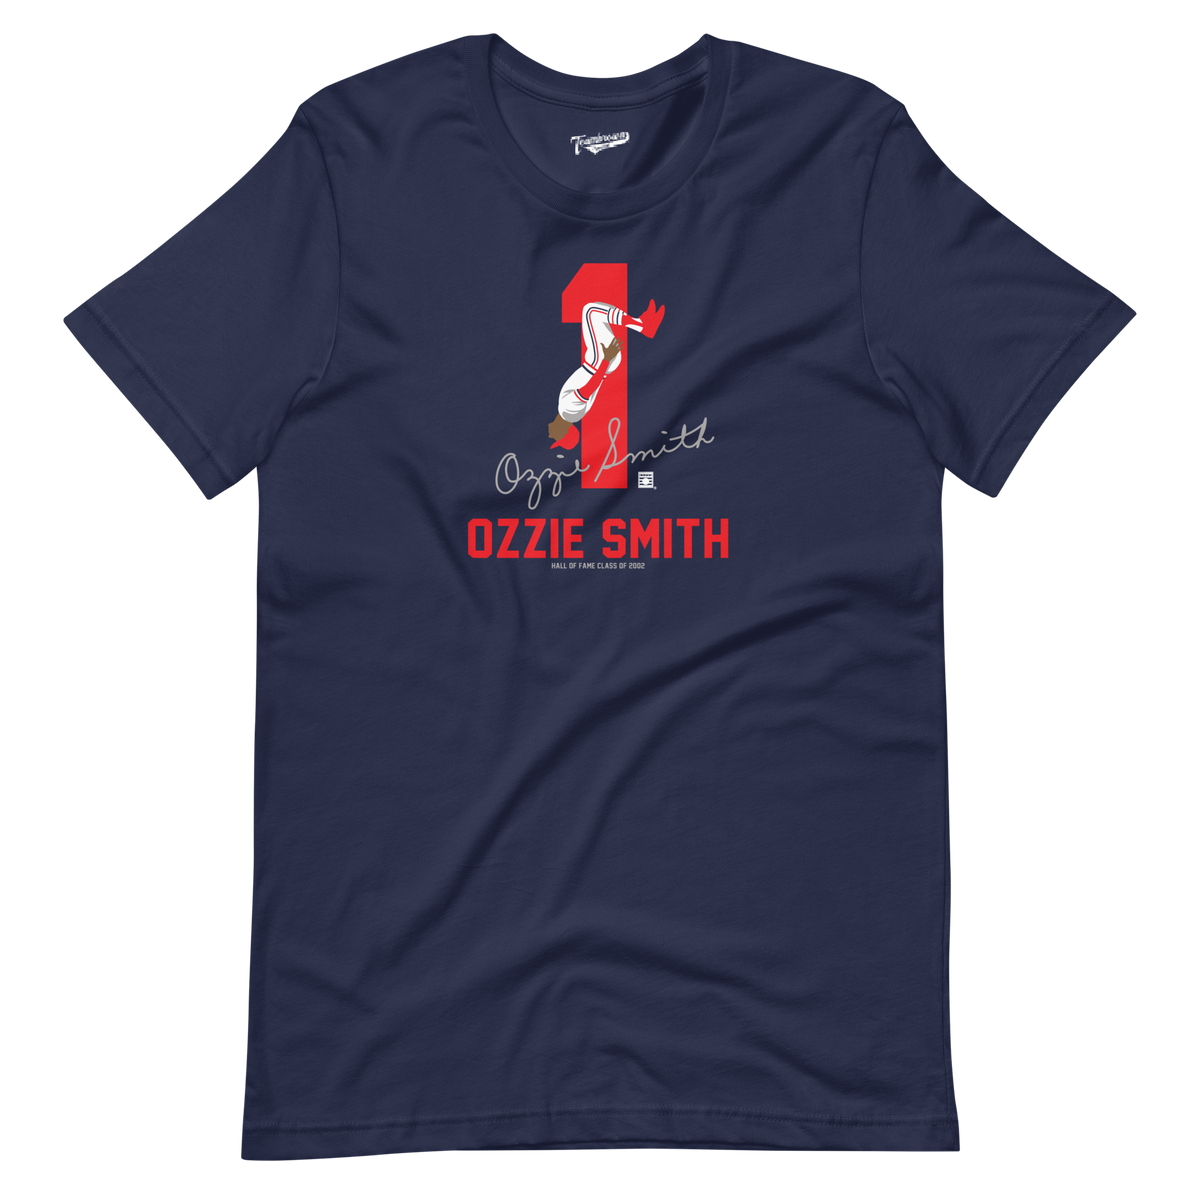 Mens Detroit Bend Triblend 3/4 Sleeve Baseball T-shirt